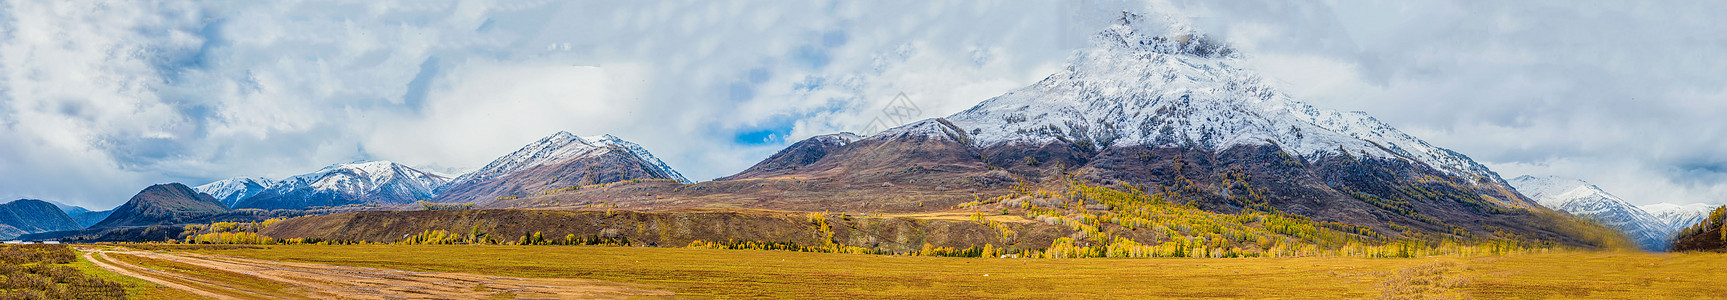 雪禾木北疆秋色雪山全景背景